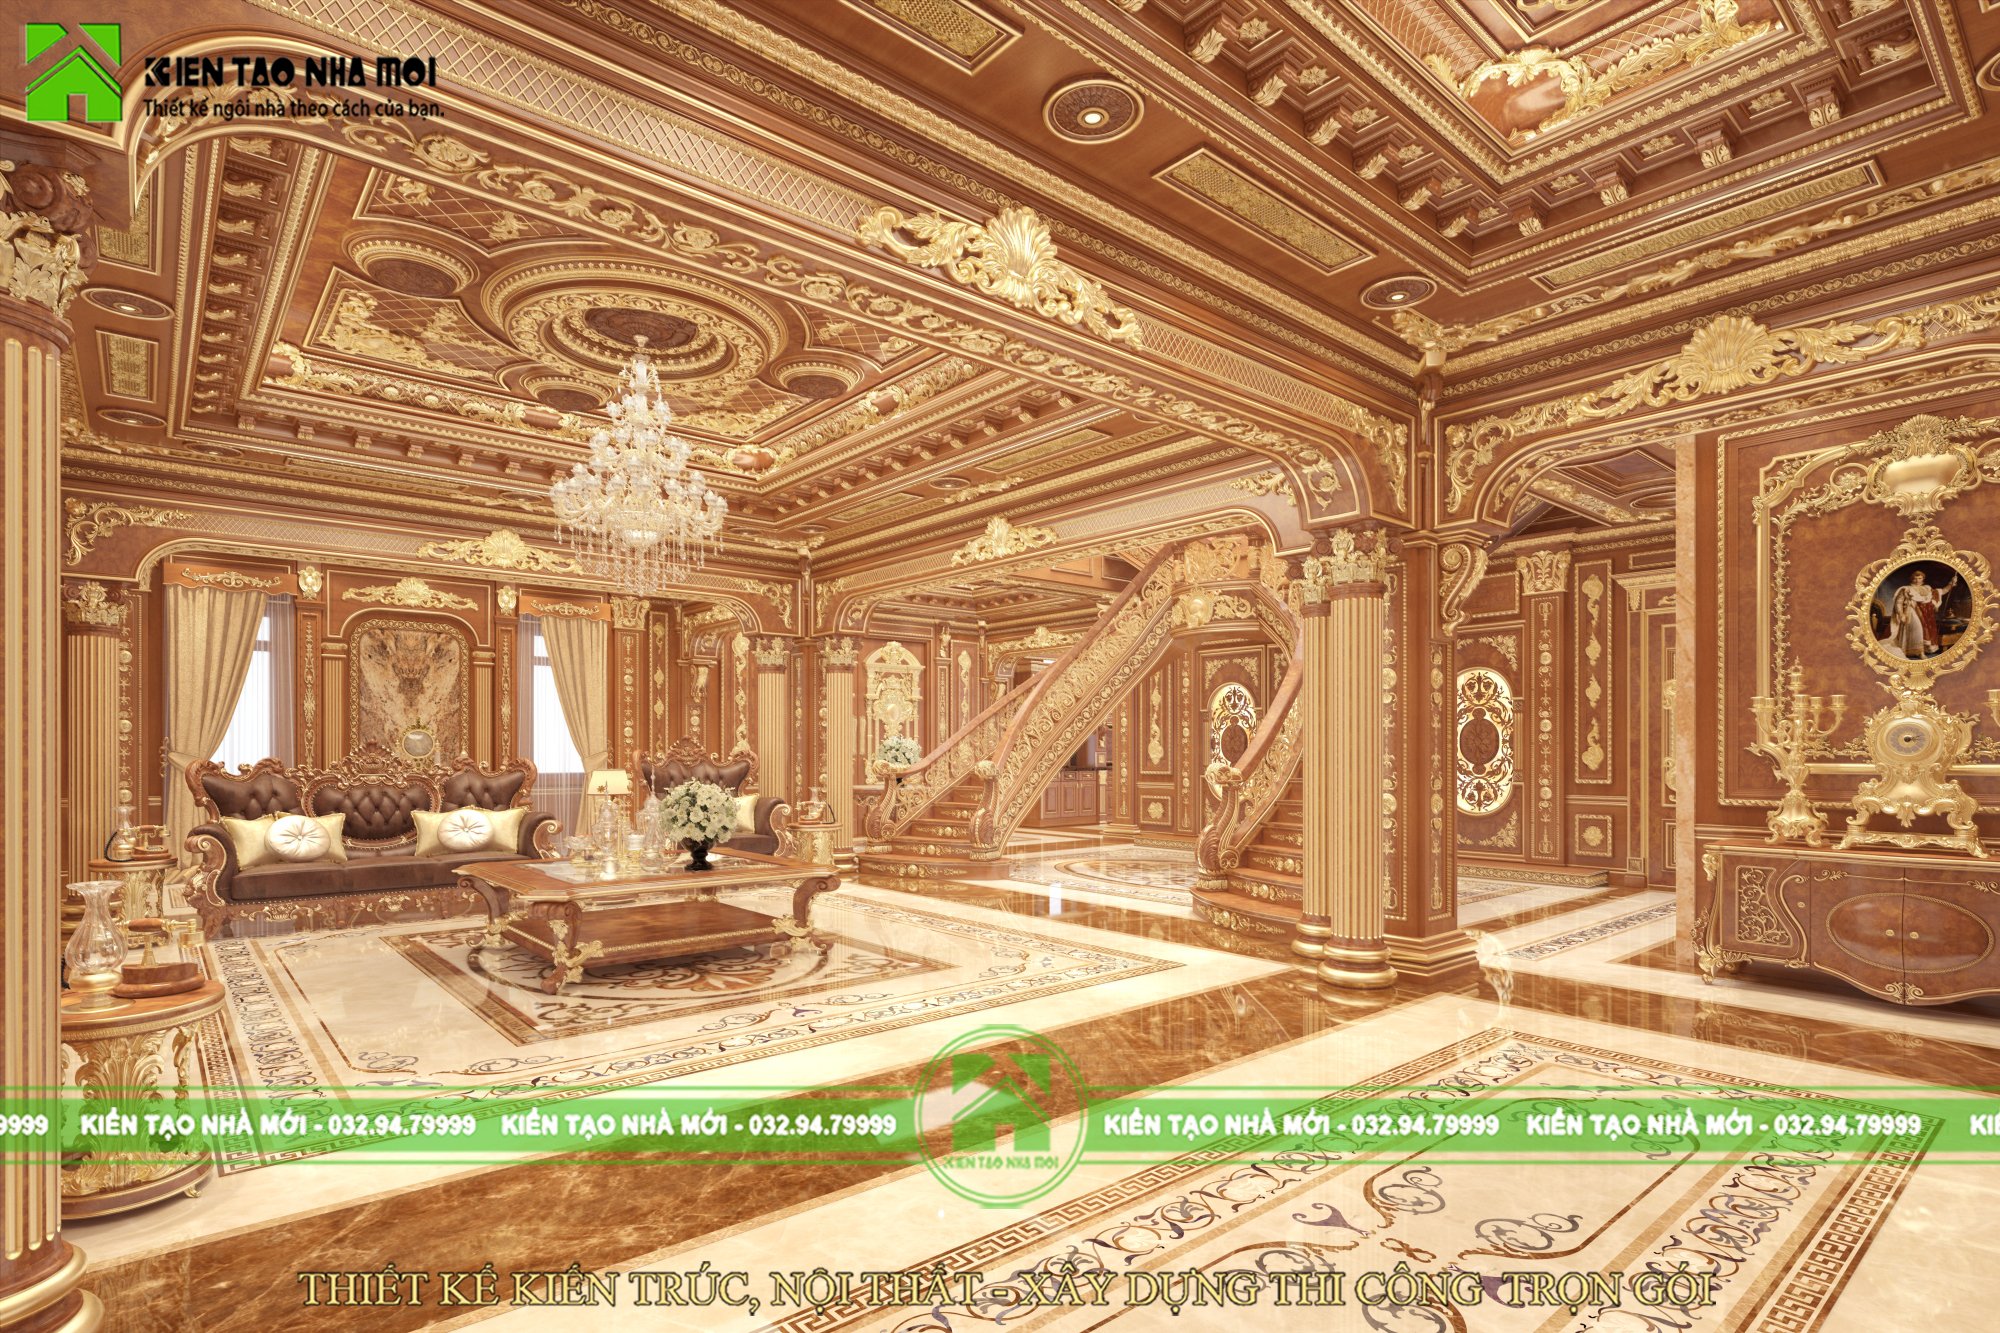 Thiết kế nội thất Biệt Thự tại Lâm Đồng Thiết kế nội thất lâu đài đẳng cấp cổ điển kiểu Pháp, hoa lệ tại Đà Lạt LD1835 1589170682 3